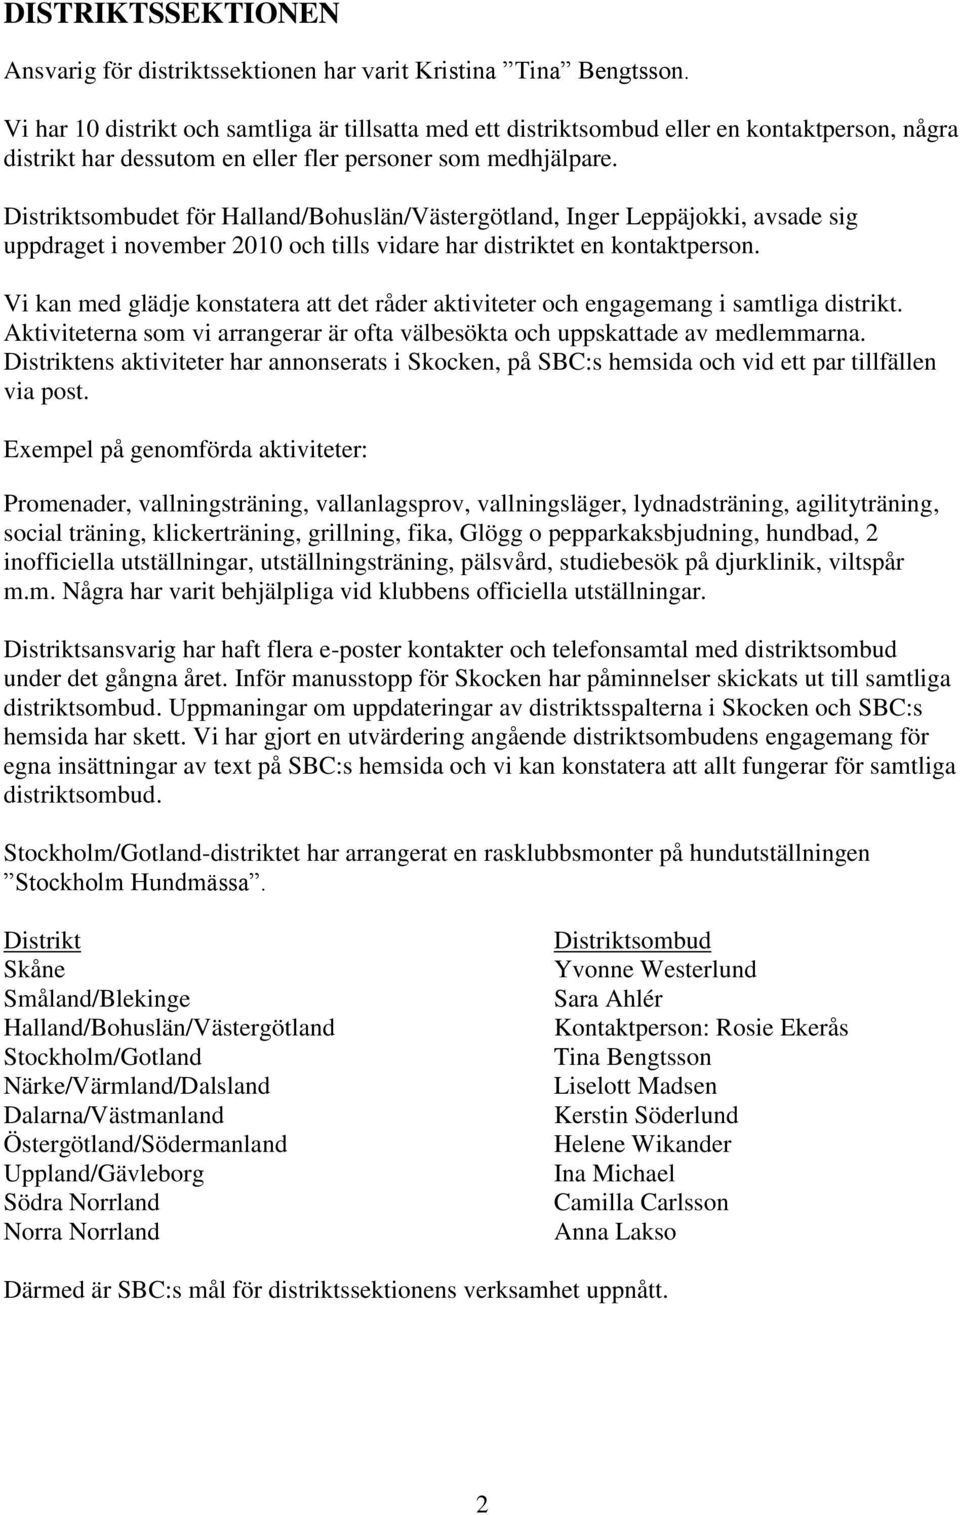 Distriktsombudet för Halland/Bohuslän/Västergötland, Inger Leppäjokki, avsade sig uppdraget i november 2010 och tills vidare har distriktet en kontaktperson.